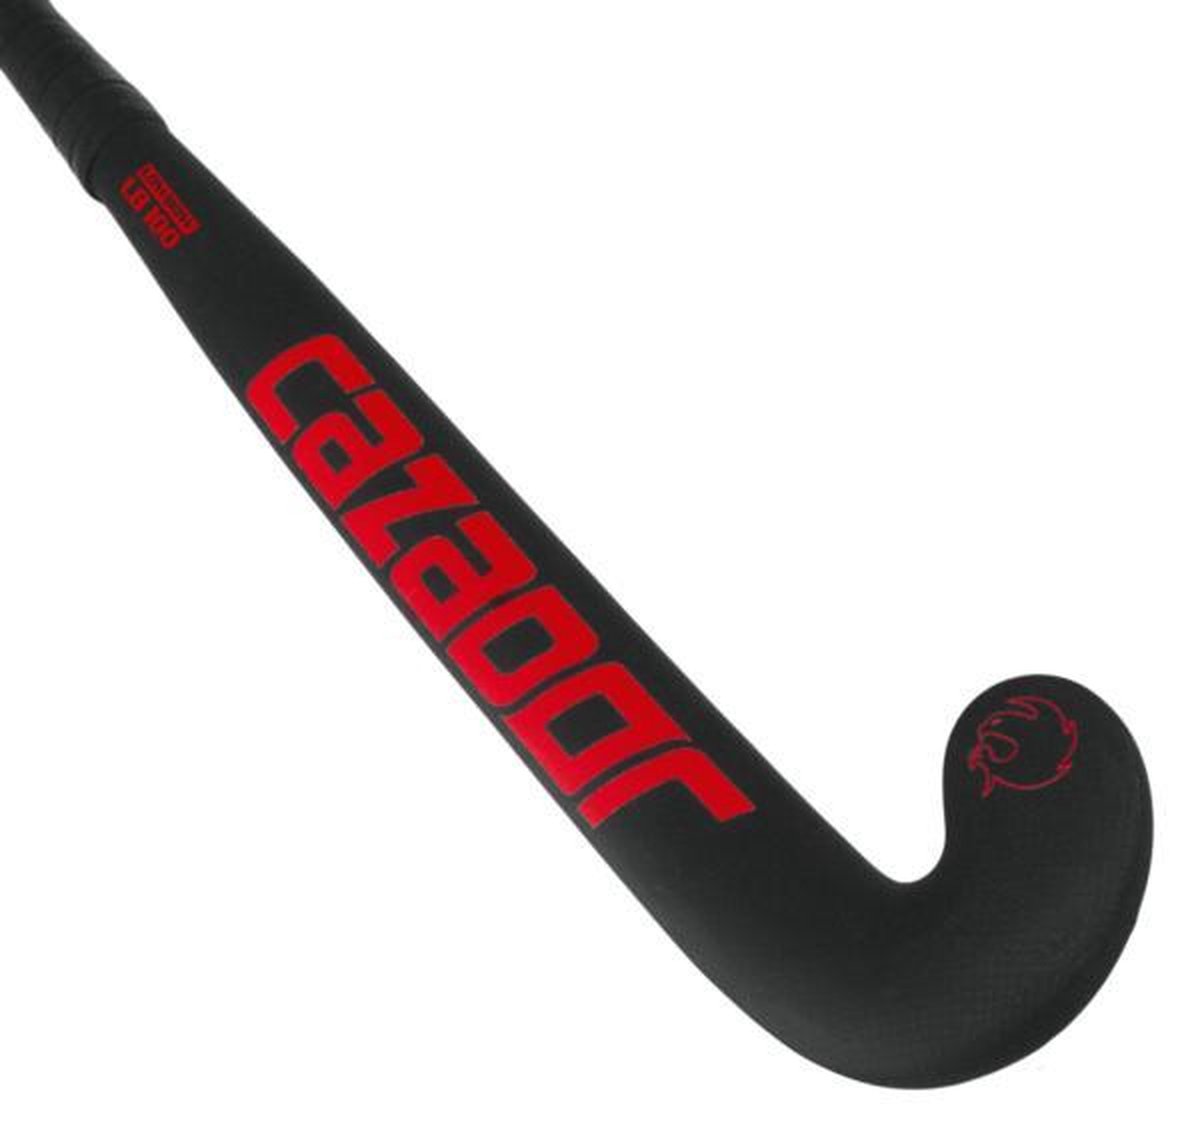 Cazador hockeystick lowbow 100% carbon